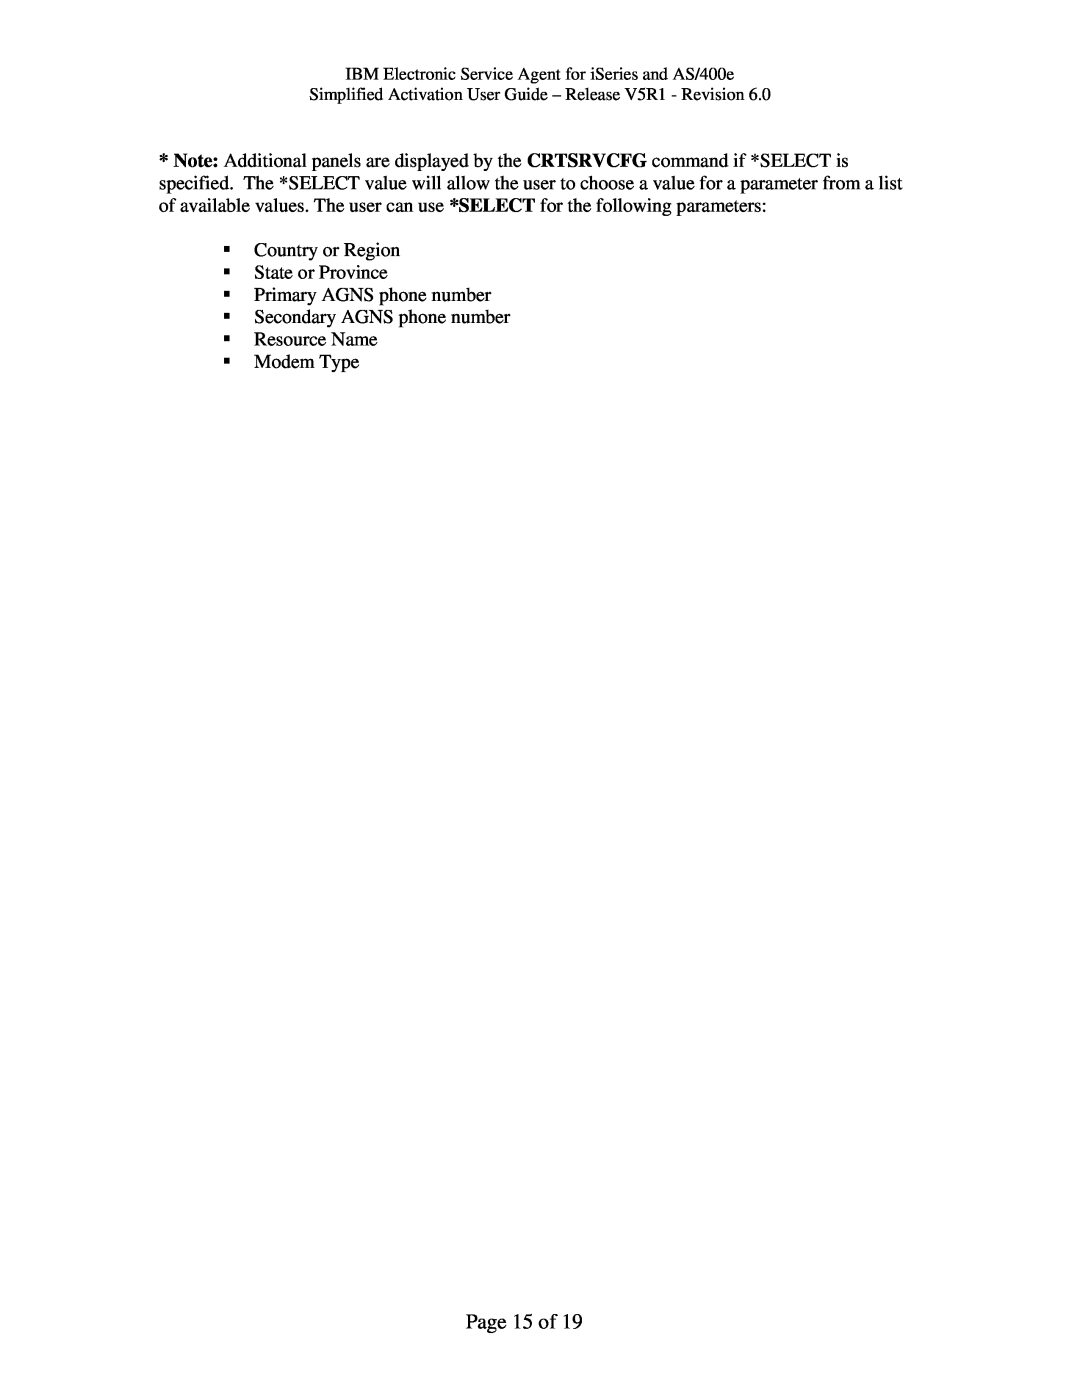 IBM iSeries, V5R1, PTF SF67624 manual Page 15 of 